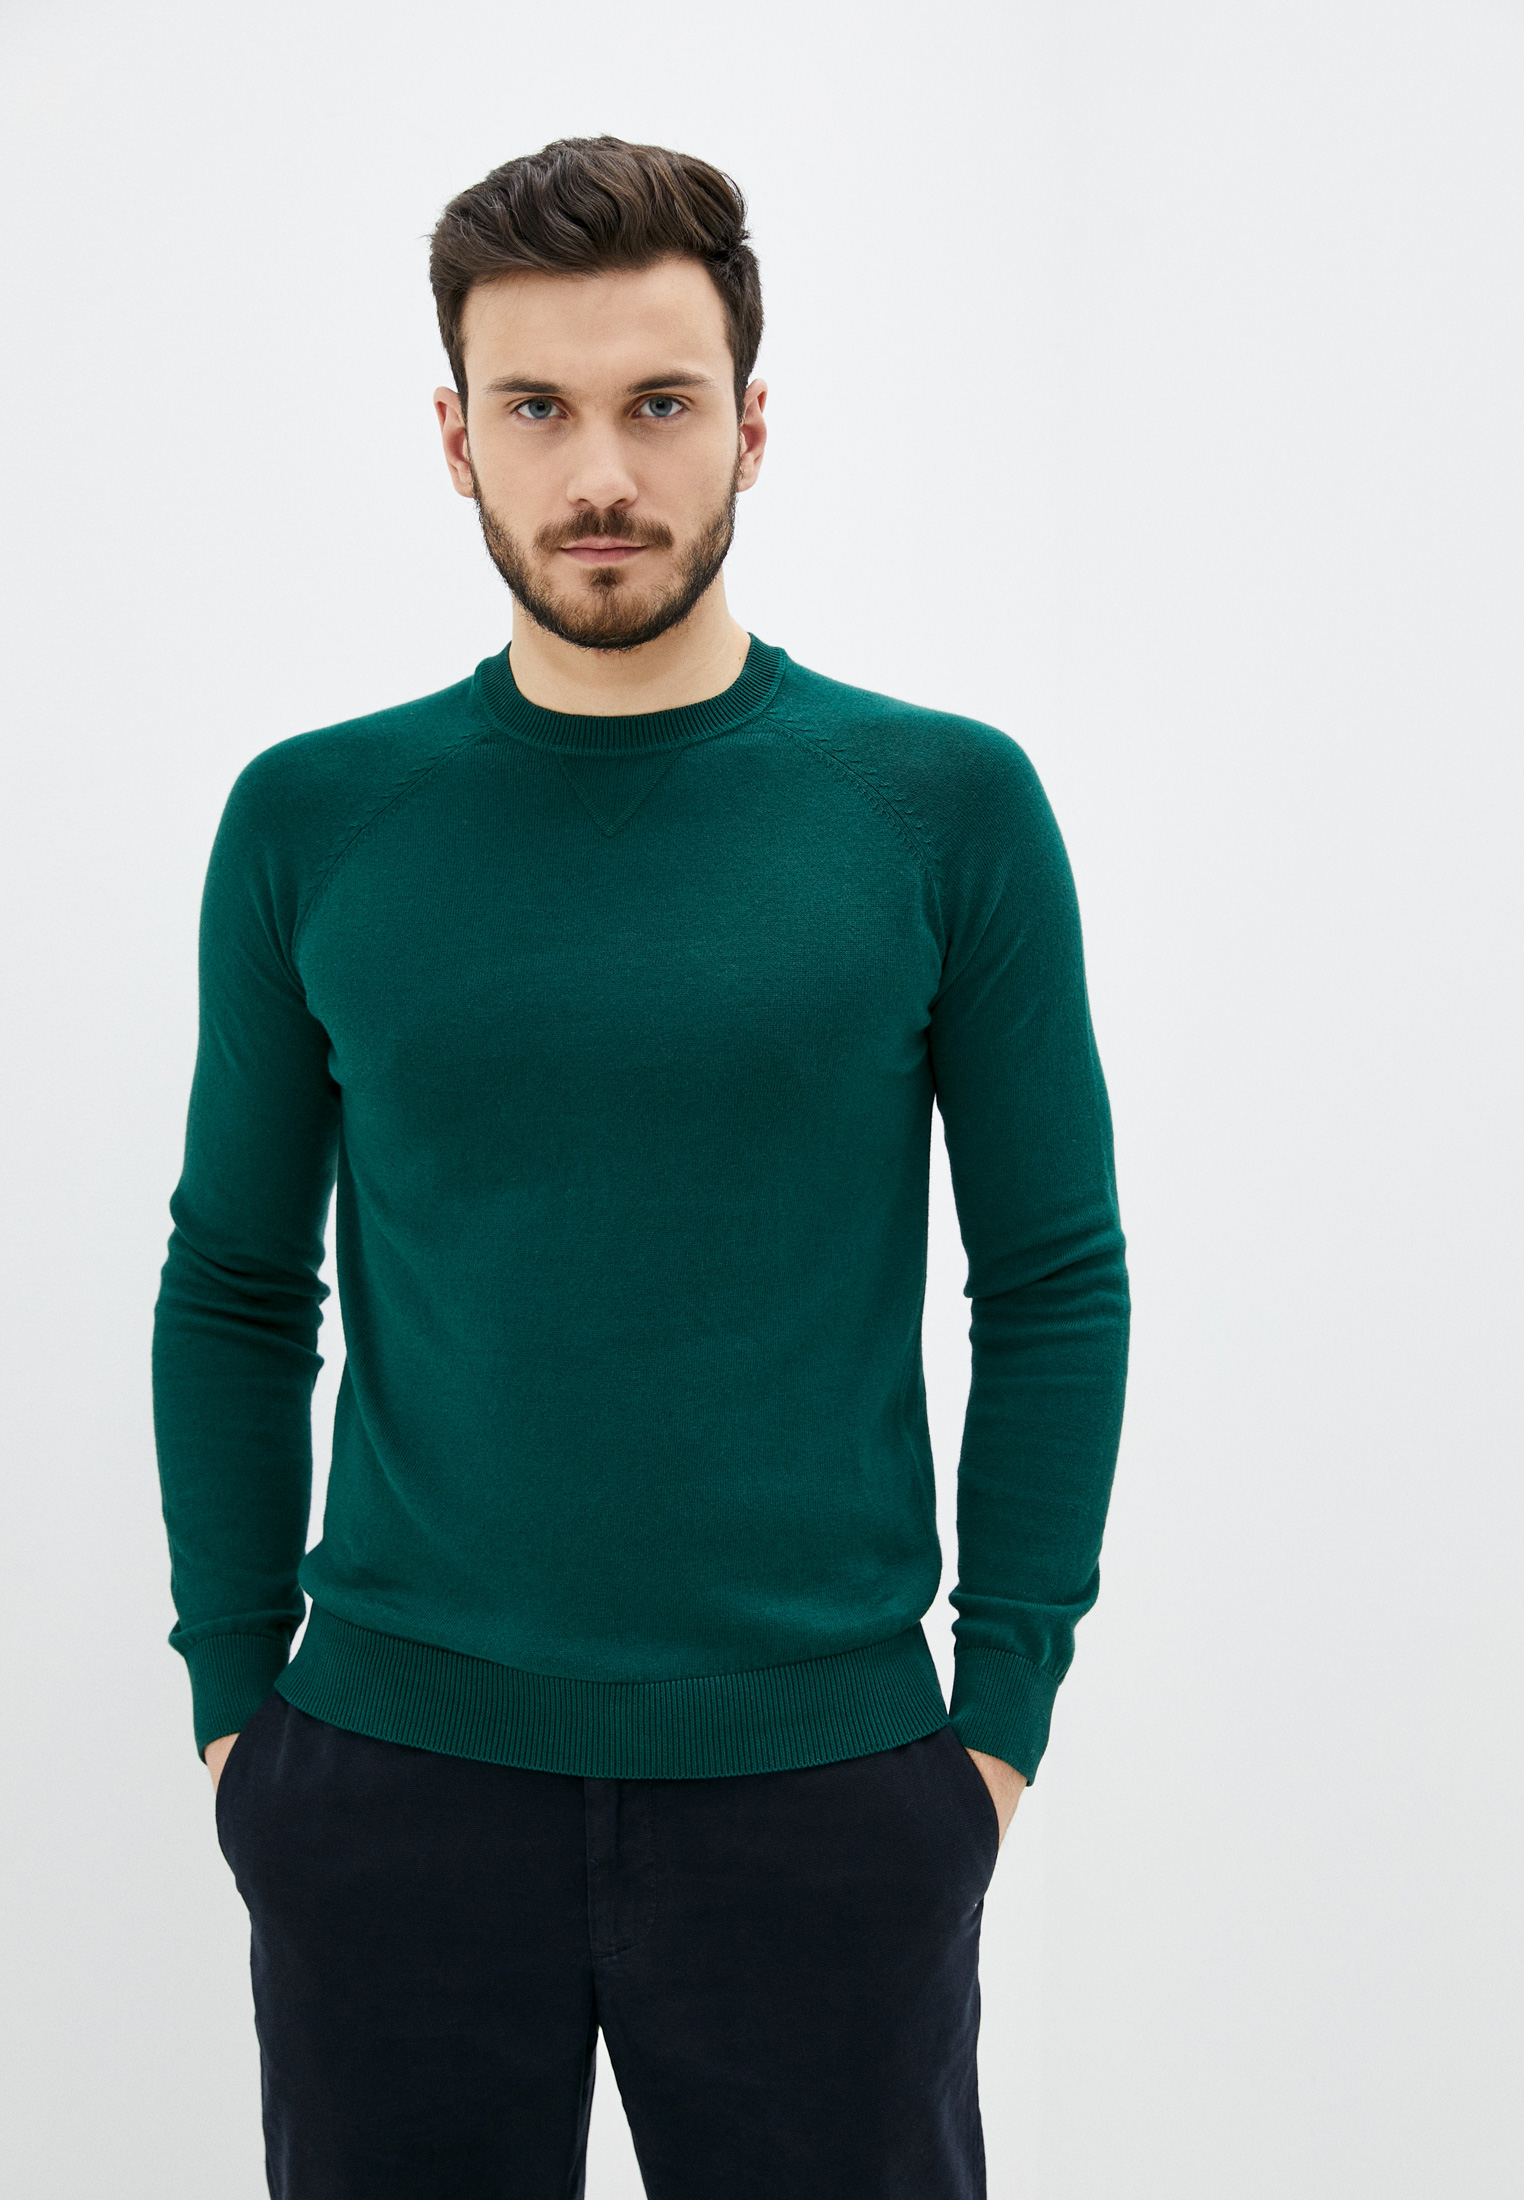 Зеленые свитеры мужские. Gant пуловер мужской зеленый. Зеленый джемпер мужской. Зеленая водолазка мужская. Злёоний свитер мужской.